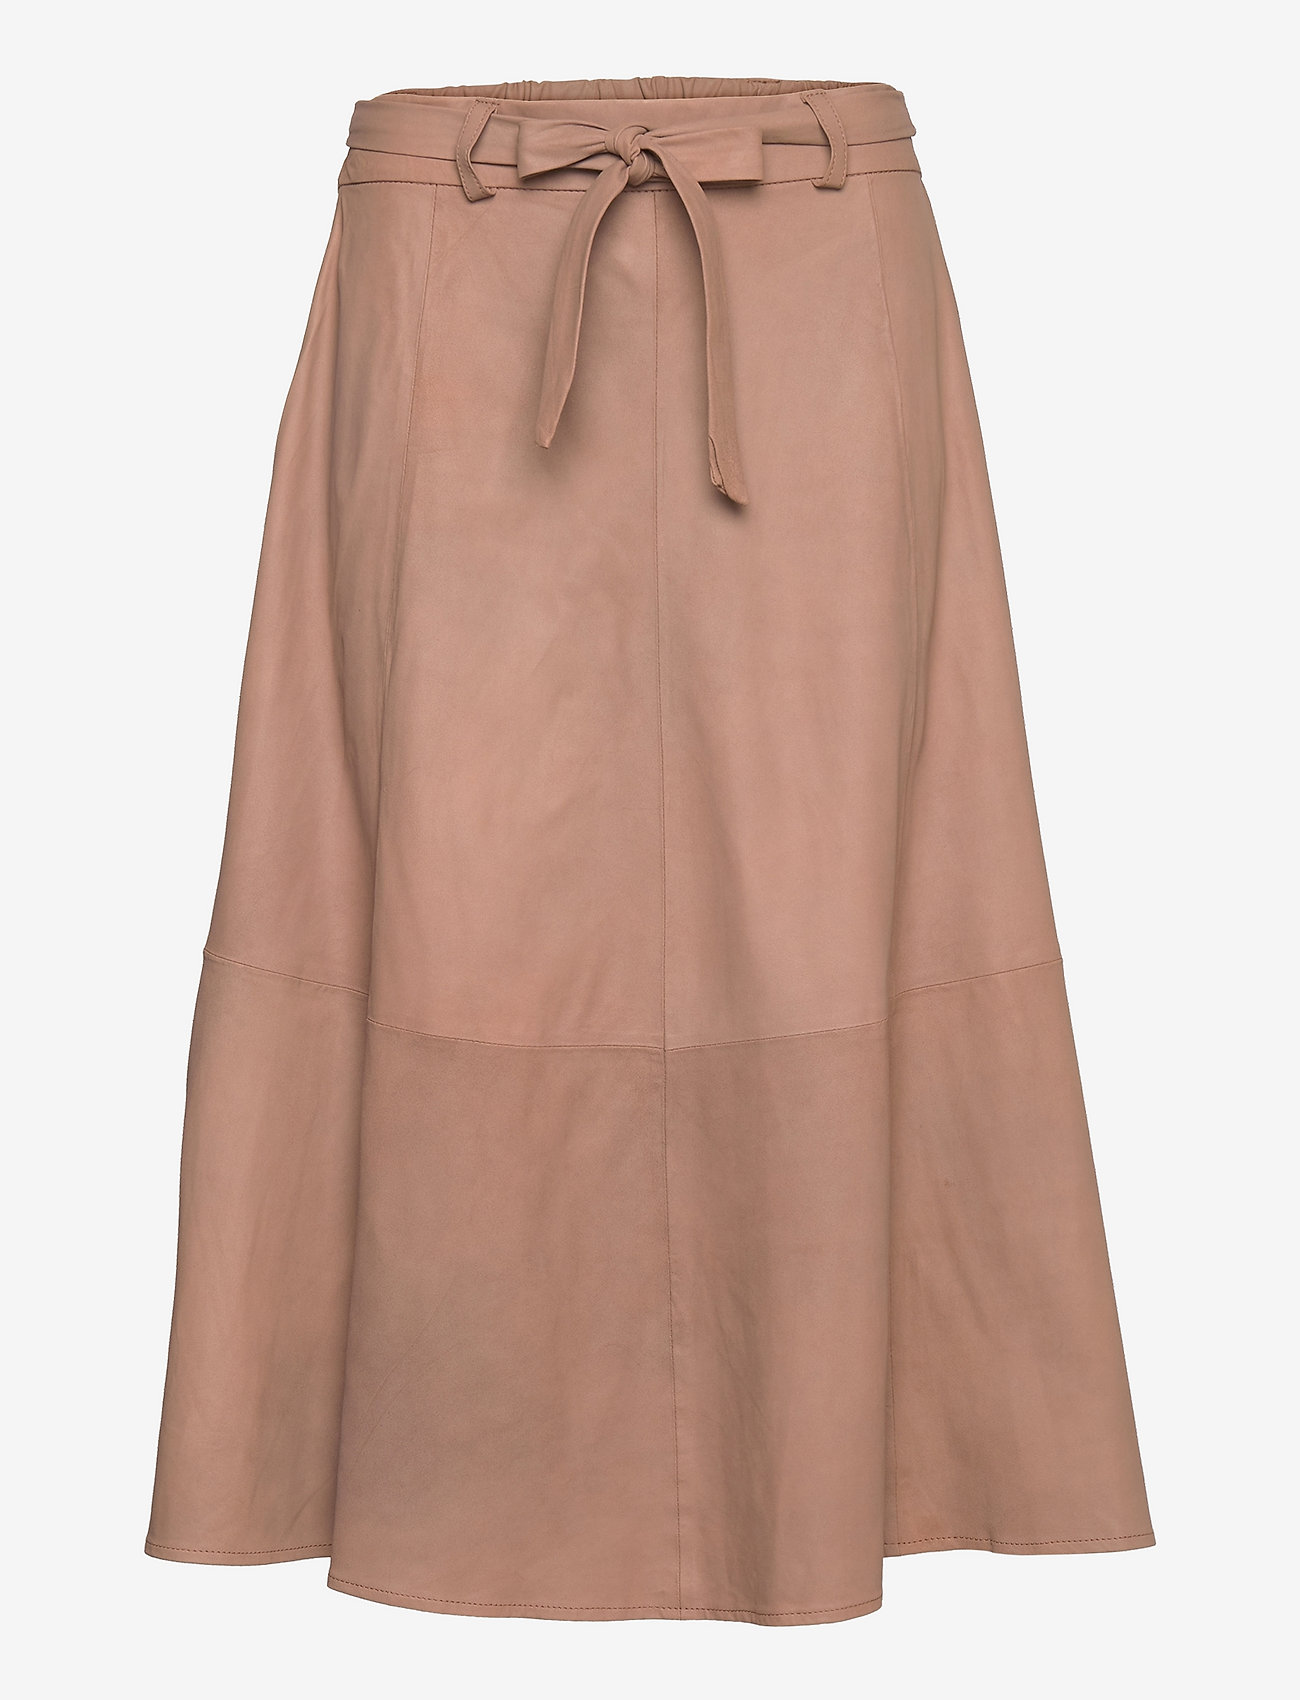 DEPECHE - A skirt w/belt - 168 latte - 0